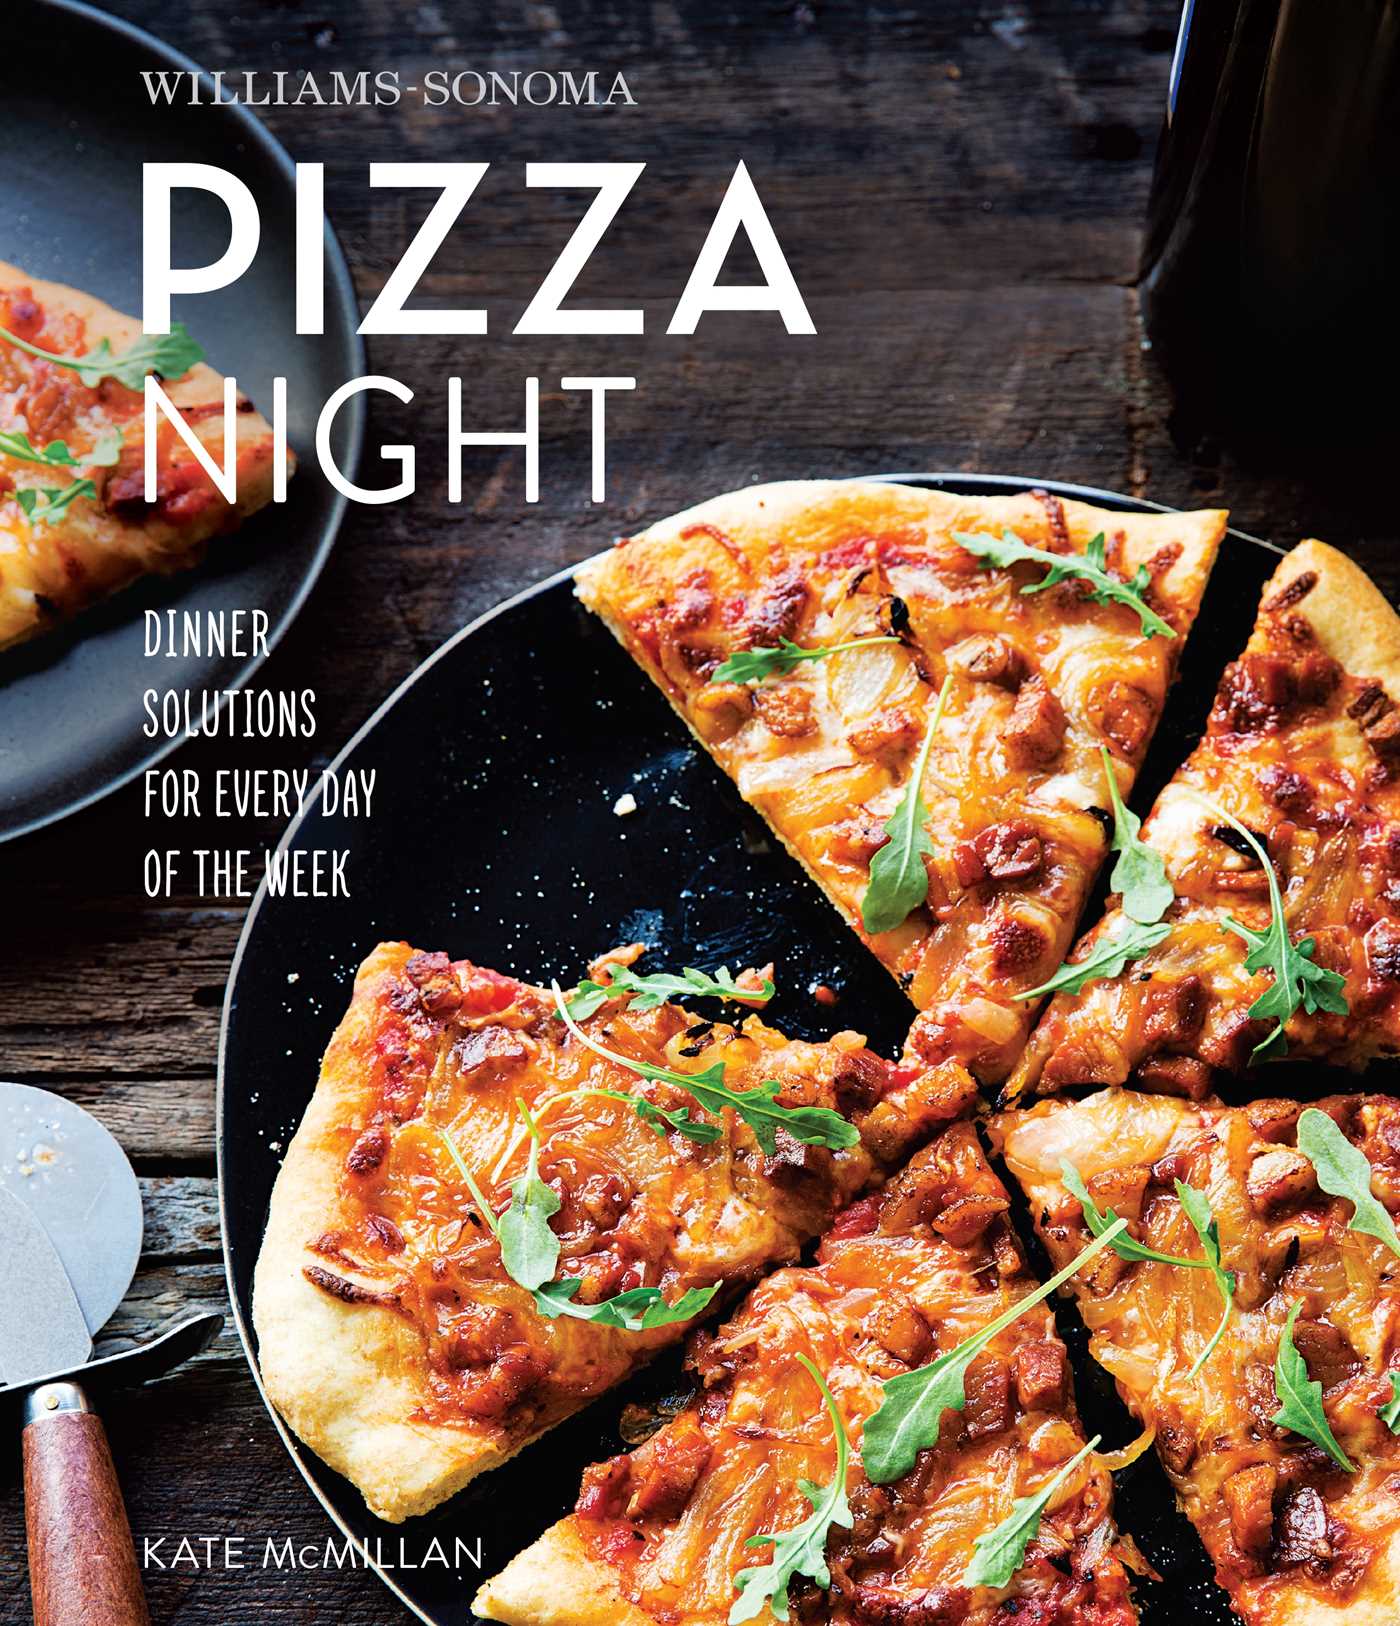 Book, Pizza Night (Williams-Sonoma)